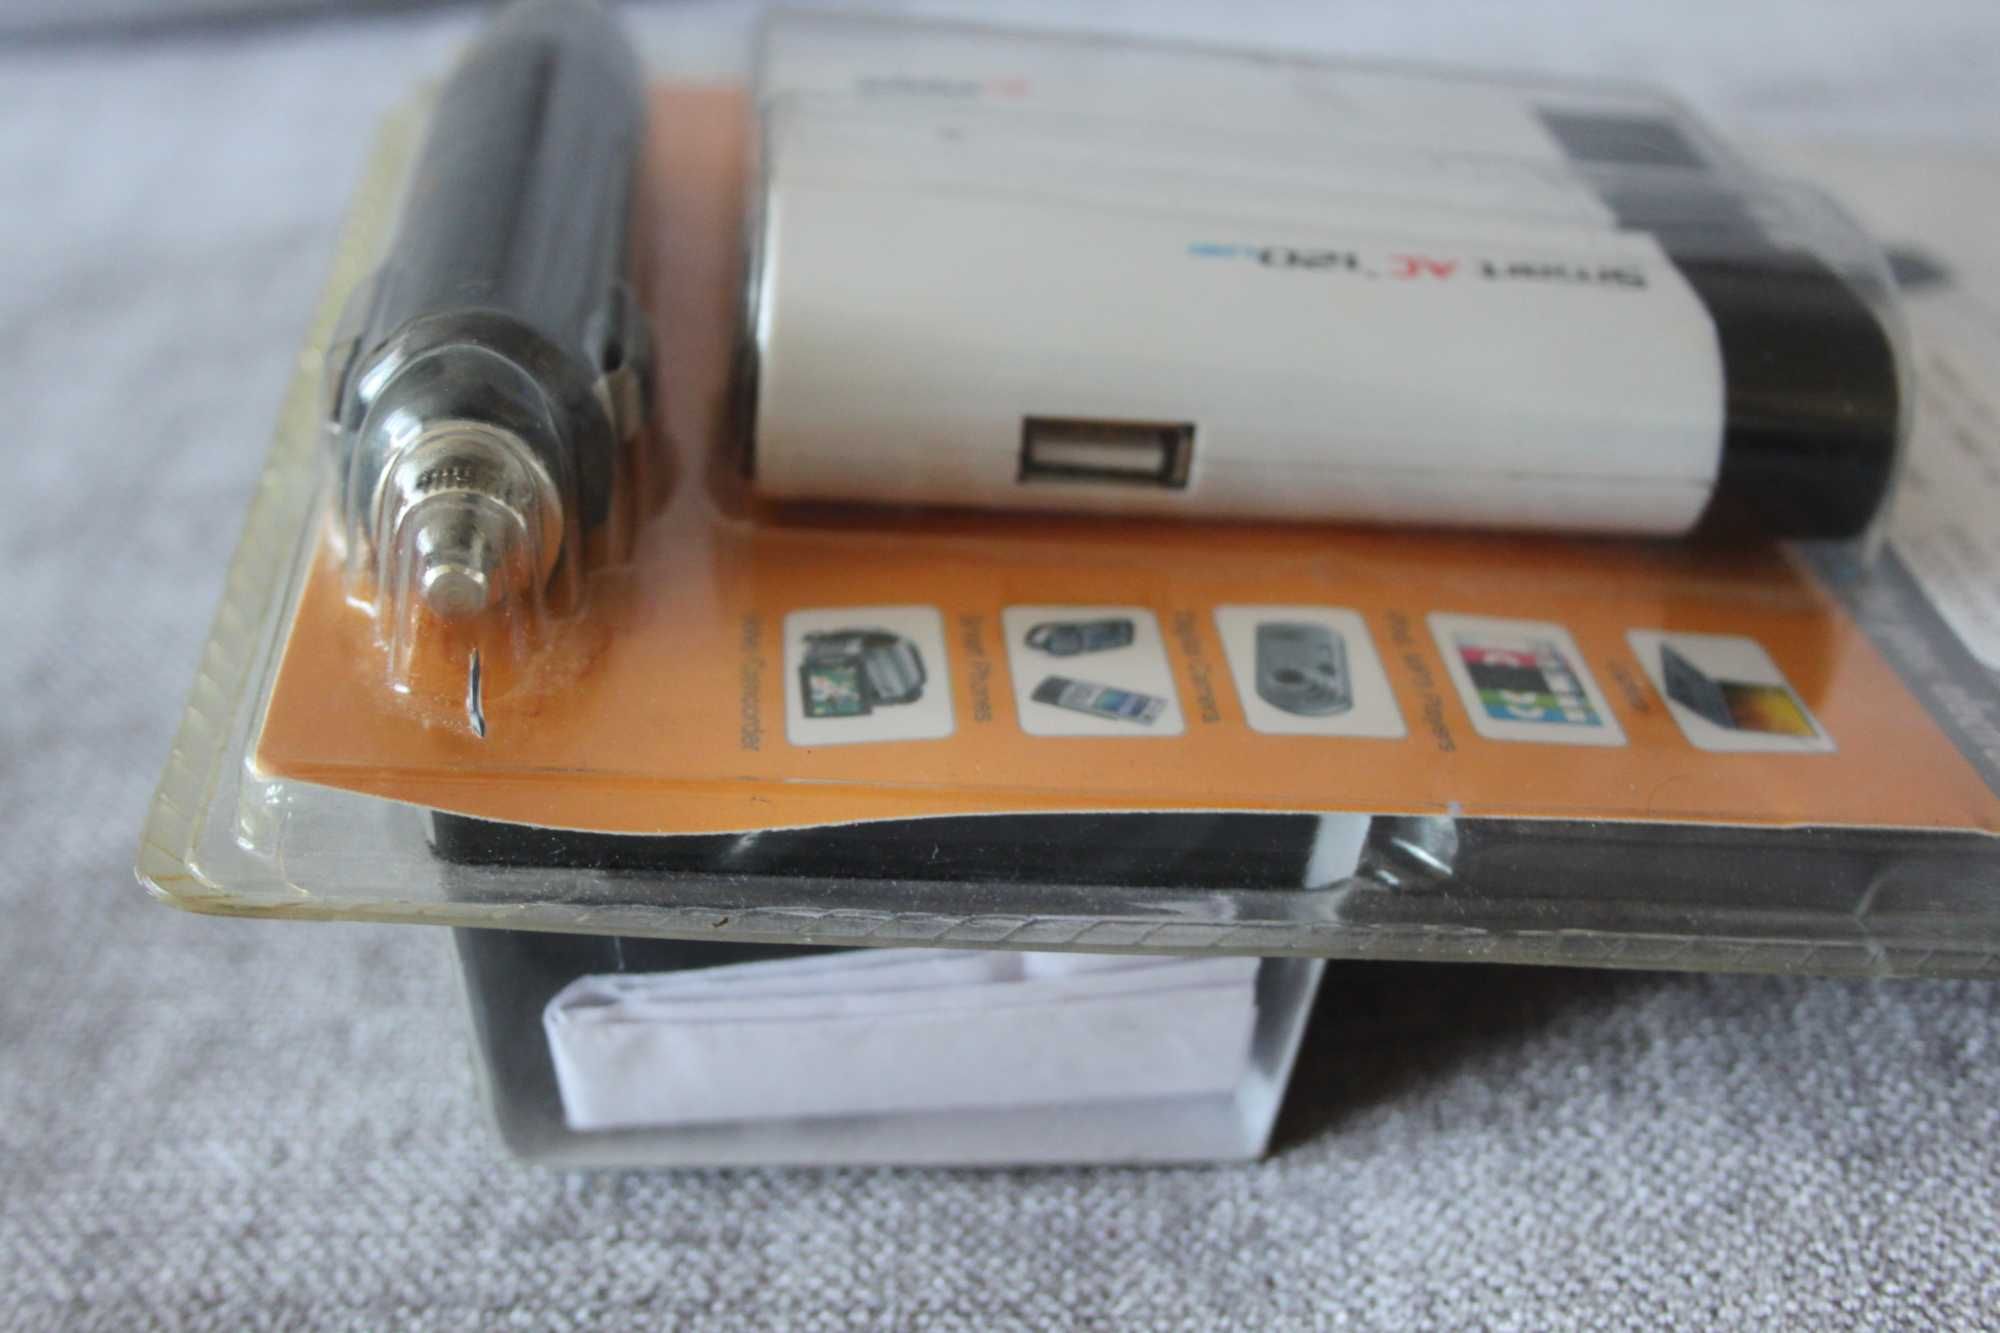 Falownik USB Smart AC 120